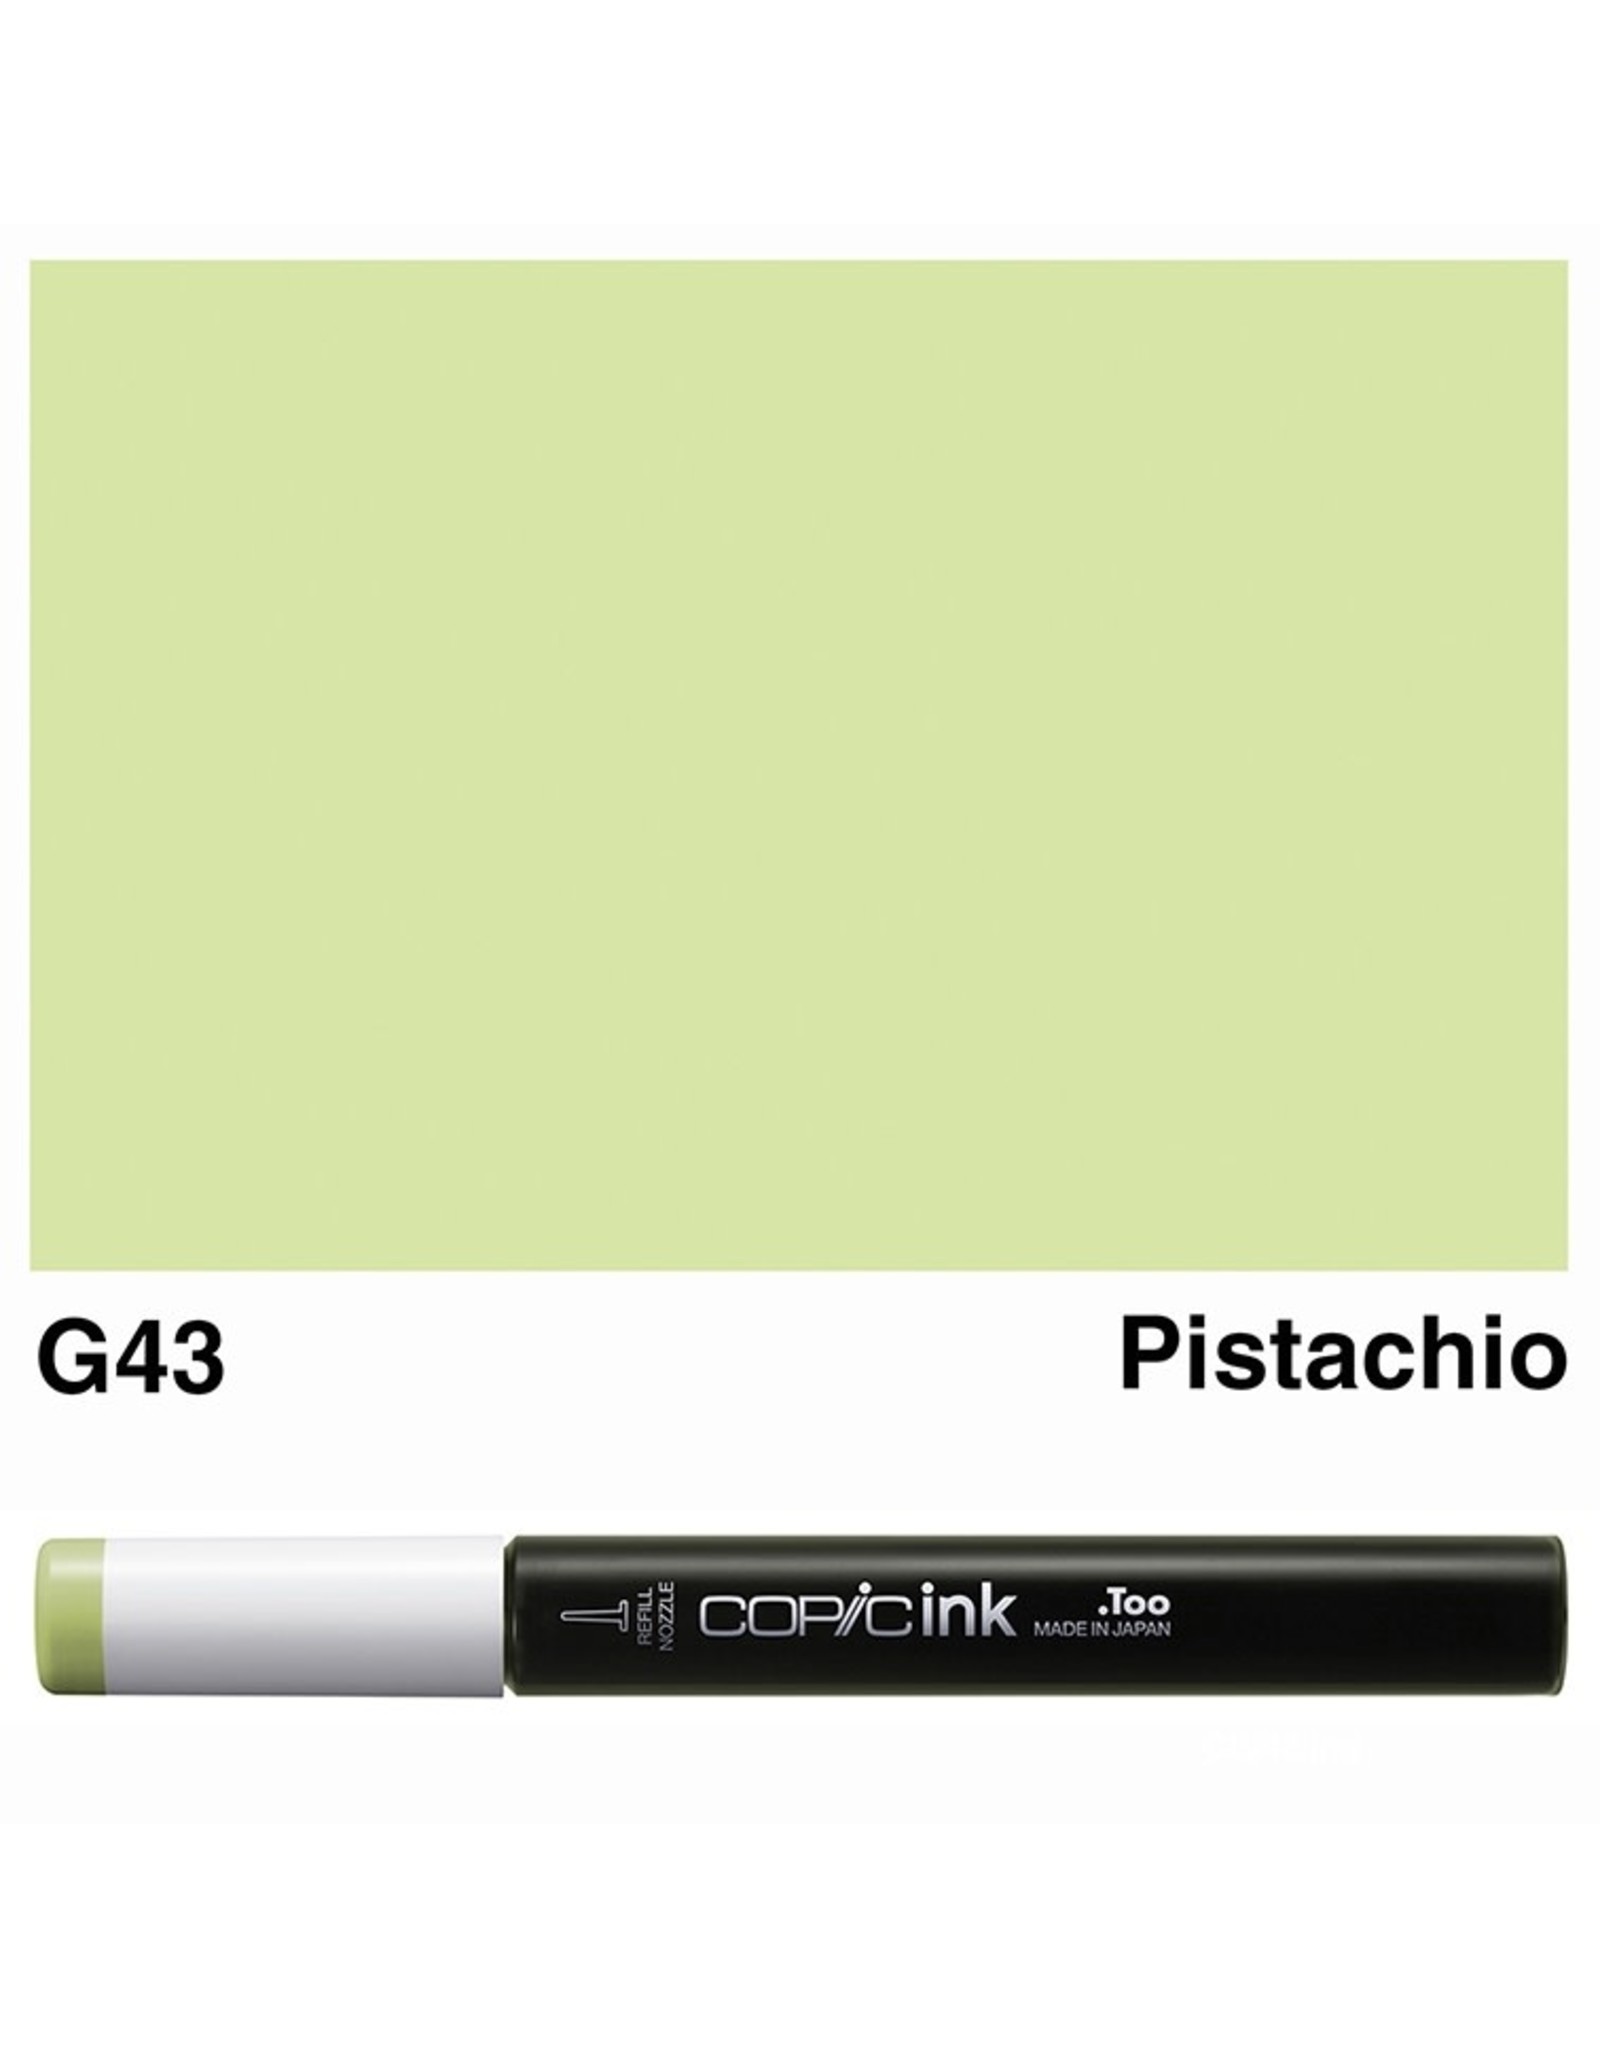 COPIC COPIC G43 PISTACHIO REFILL